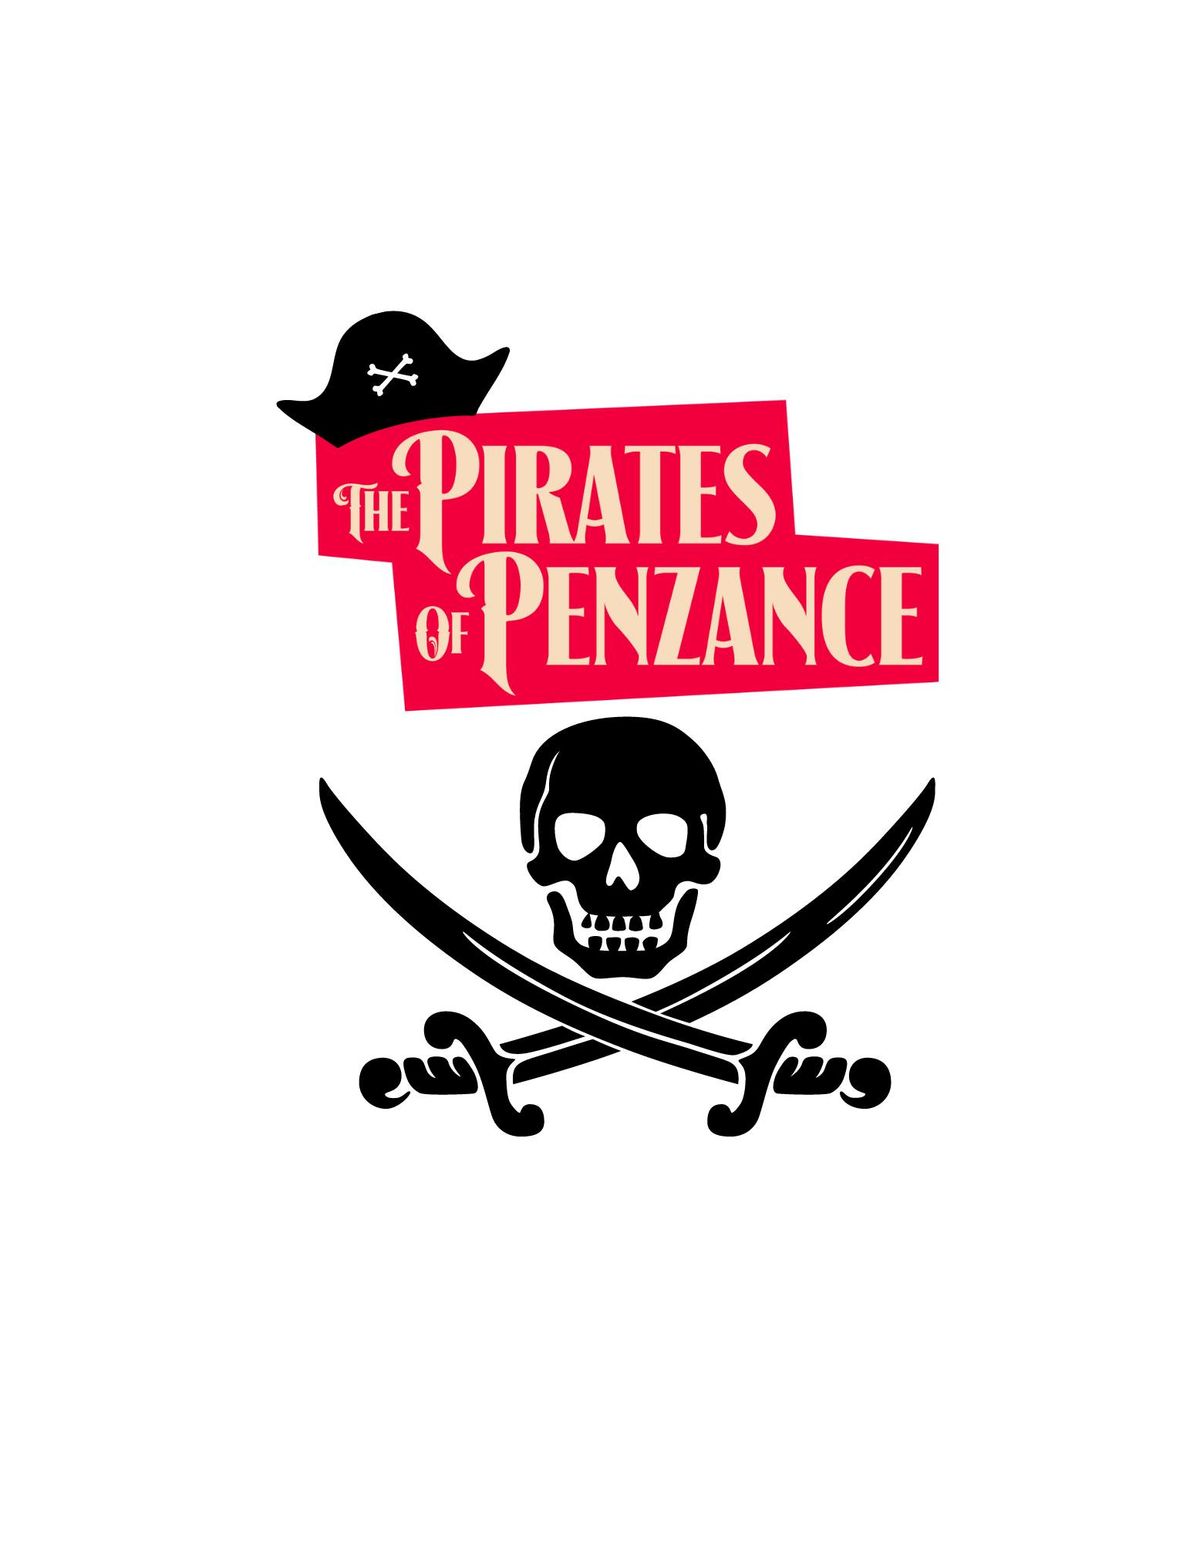 Studio 12 presents: The Pirates of Penzance